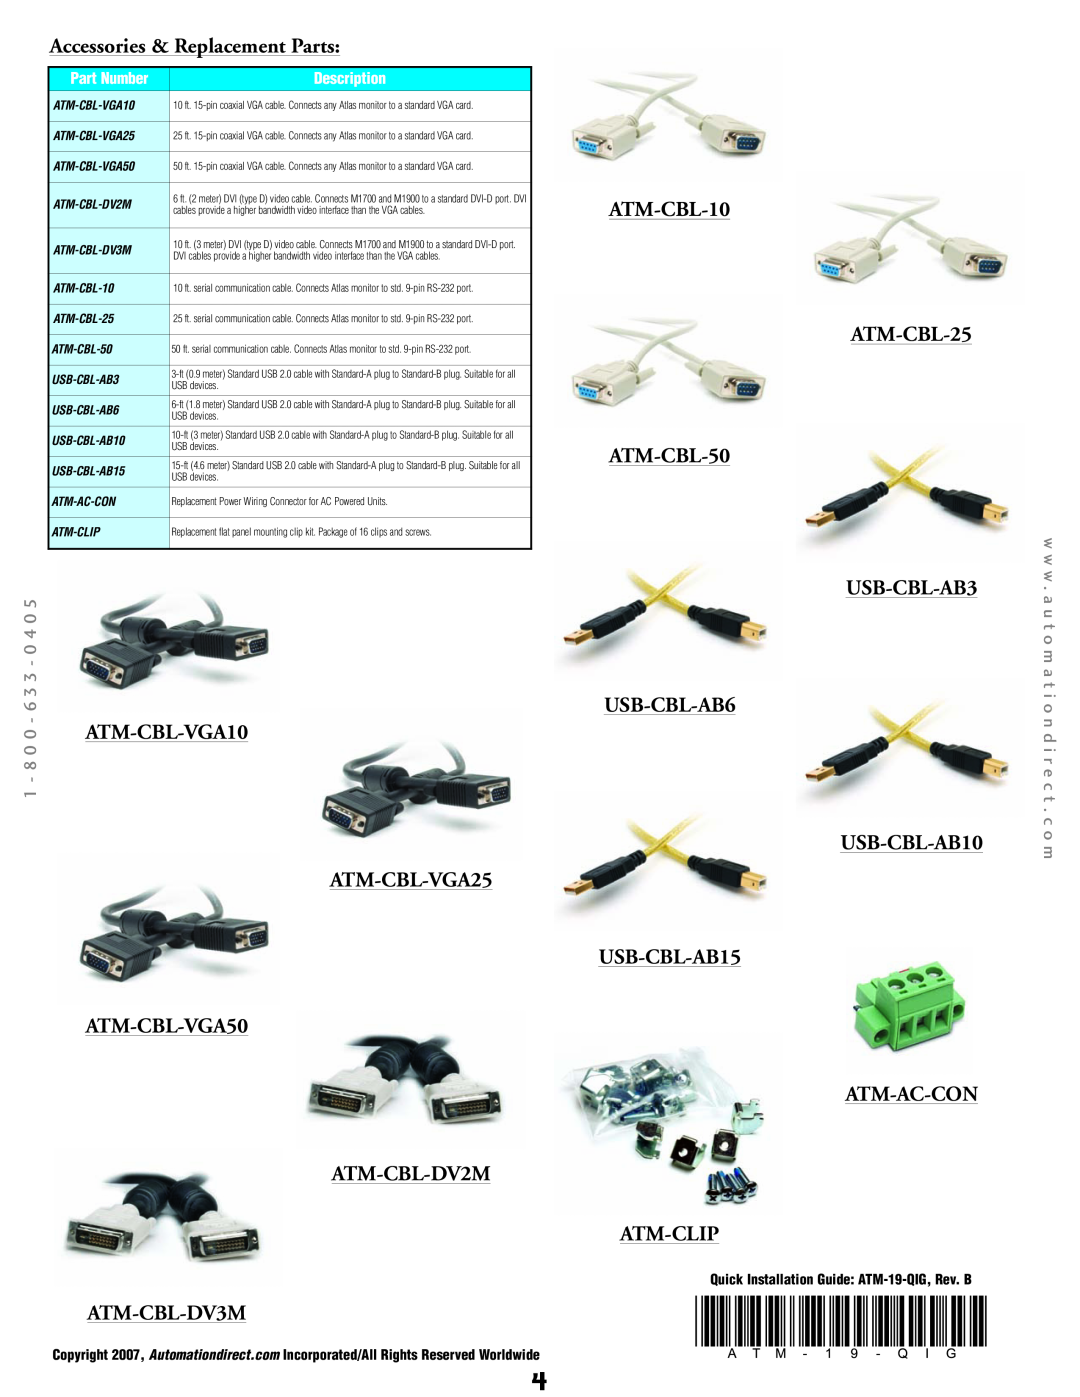 Atlas ATM1900T Accessories & Replacement Parts, ATM-CBL-VGA25 ATM-CBL-VGA50 ATM-CBL-DV2M ATM-CBL-DV3M, 0 - 6 3 3 - 0 4 0 